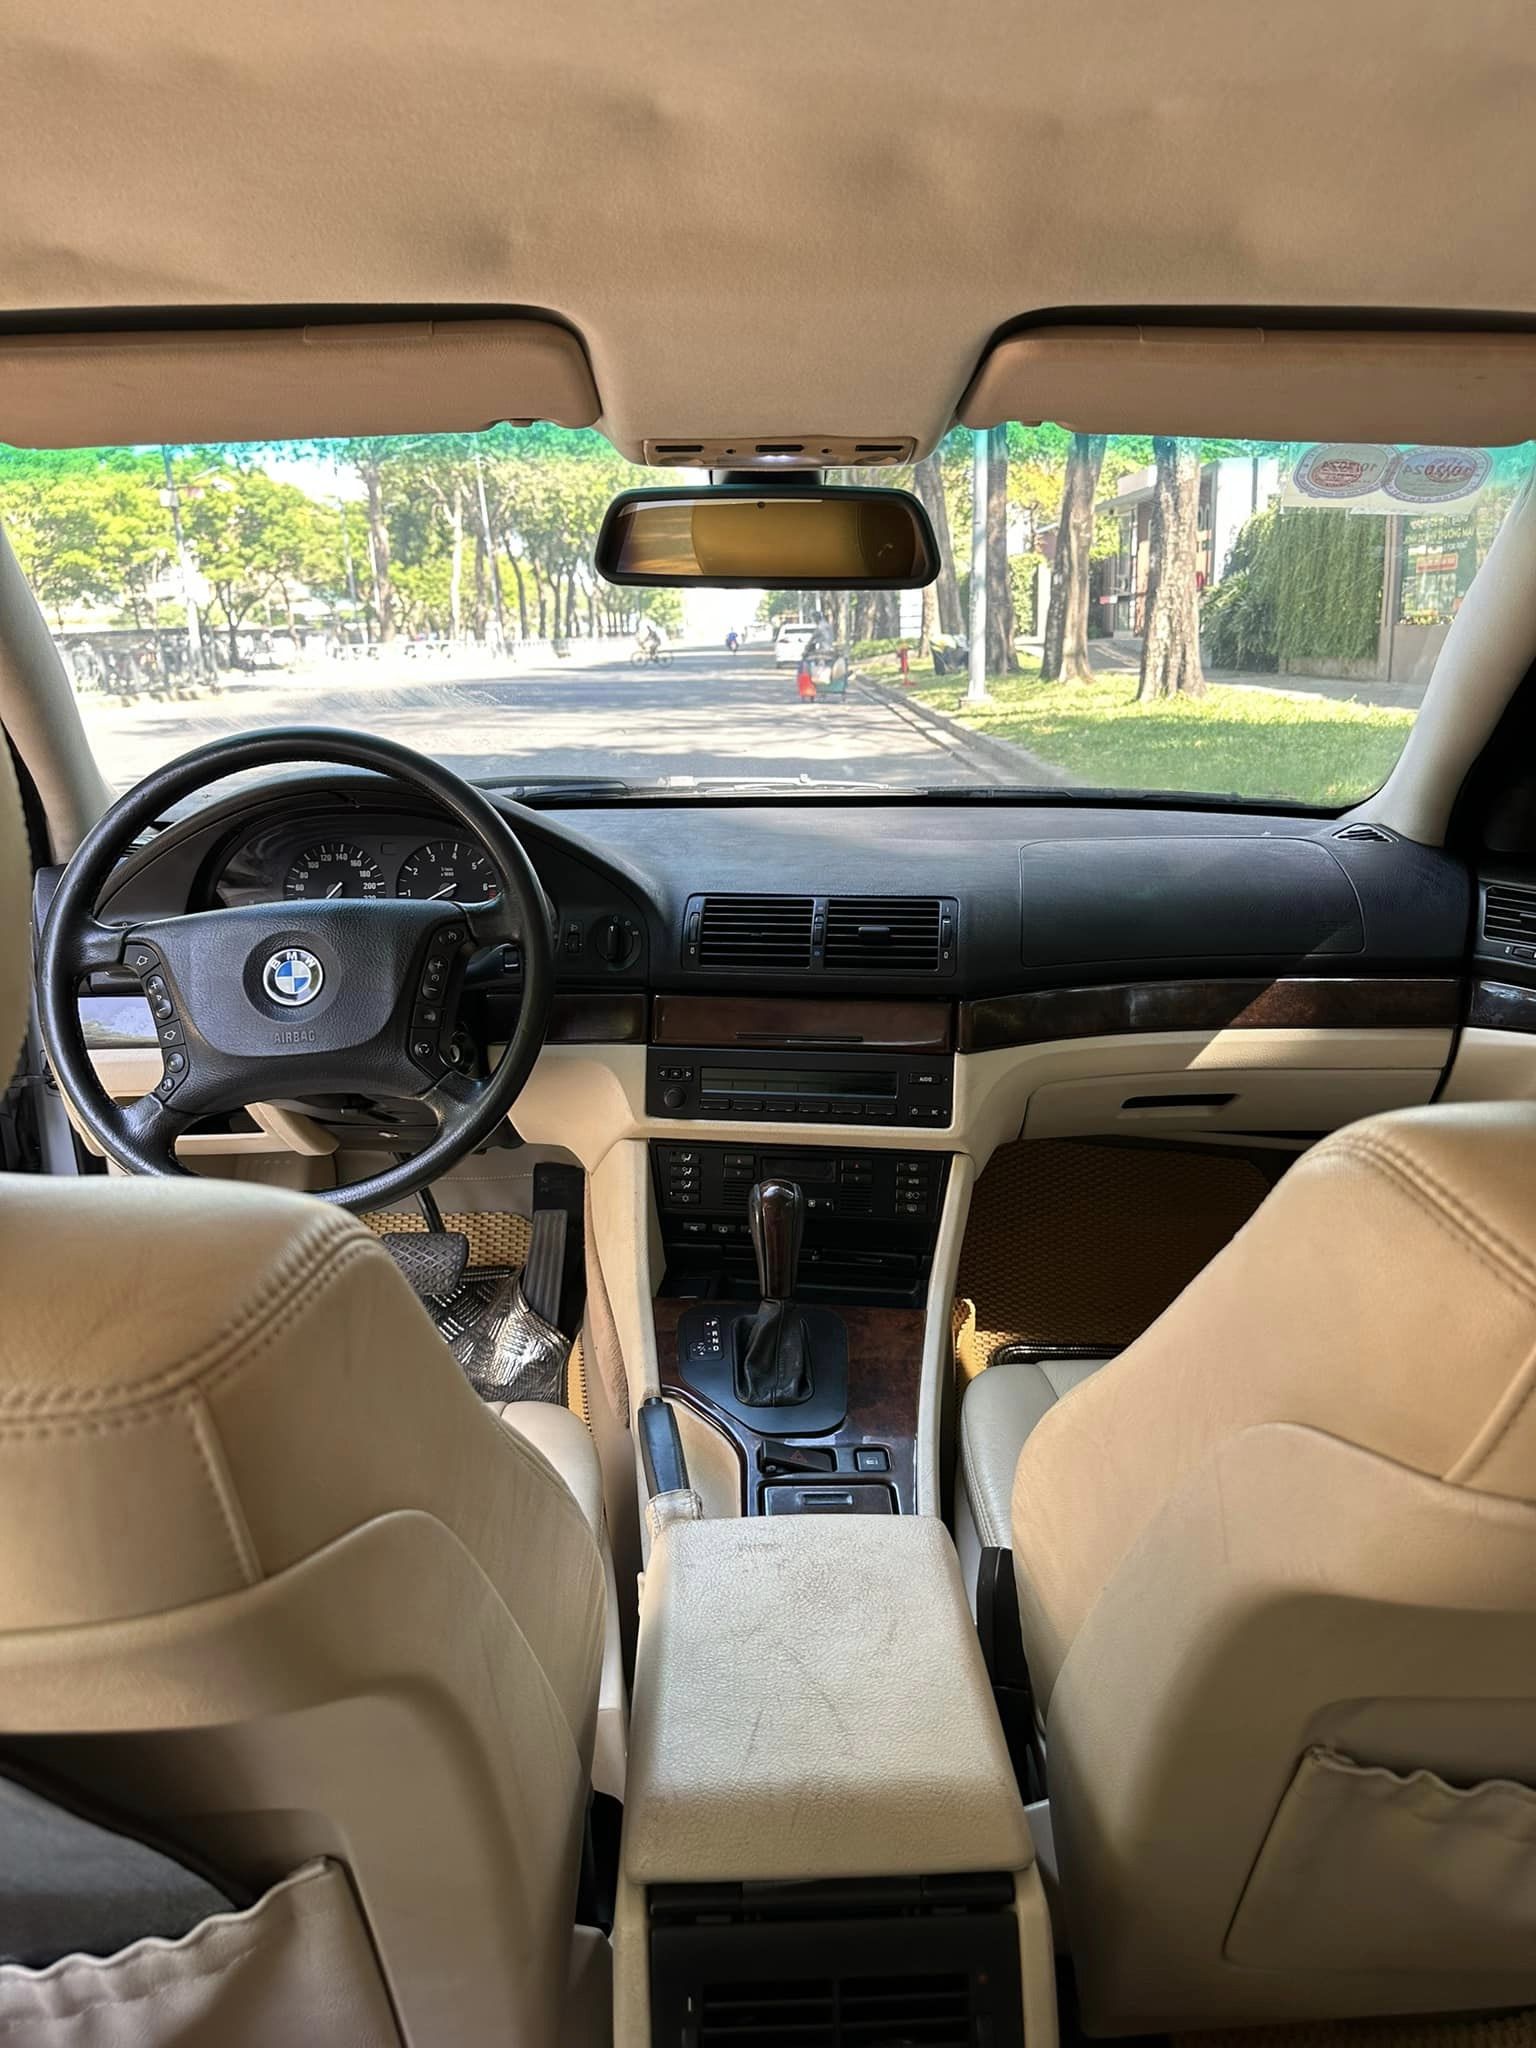 Thích BMW 5-Series mà chỉ có 140 triệu đồng thì chiếc xe này là một lựa chọn: Nhiều trang bị cao cấp, từng được giám đốc dùng- Ảnh 2.